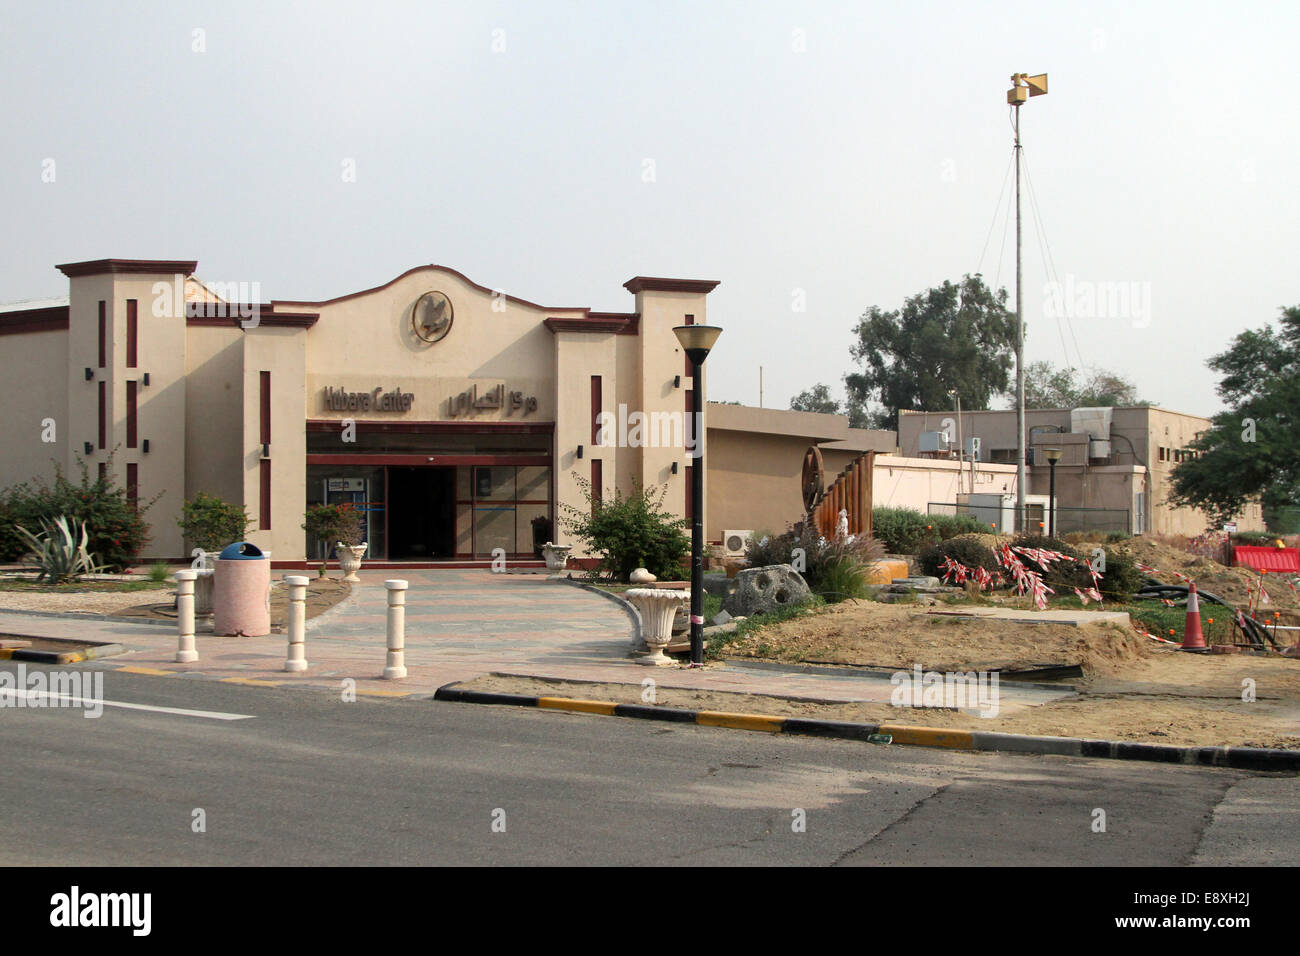 Das Hubara Leisure Centre in Ahmadi, Kuwait auf Mittwoch, 21. November 2012 Stockfoto